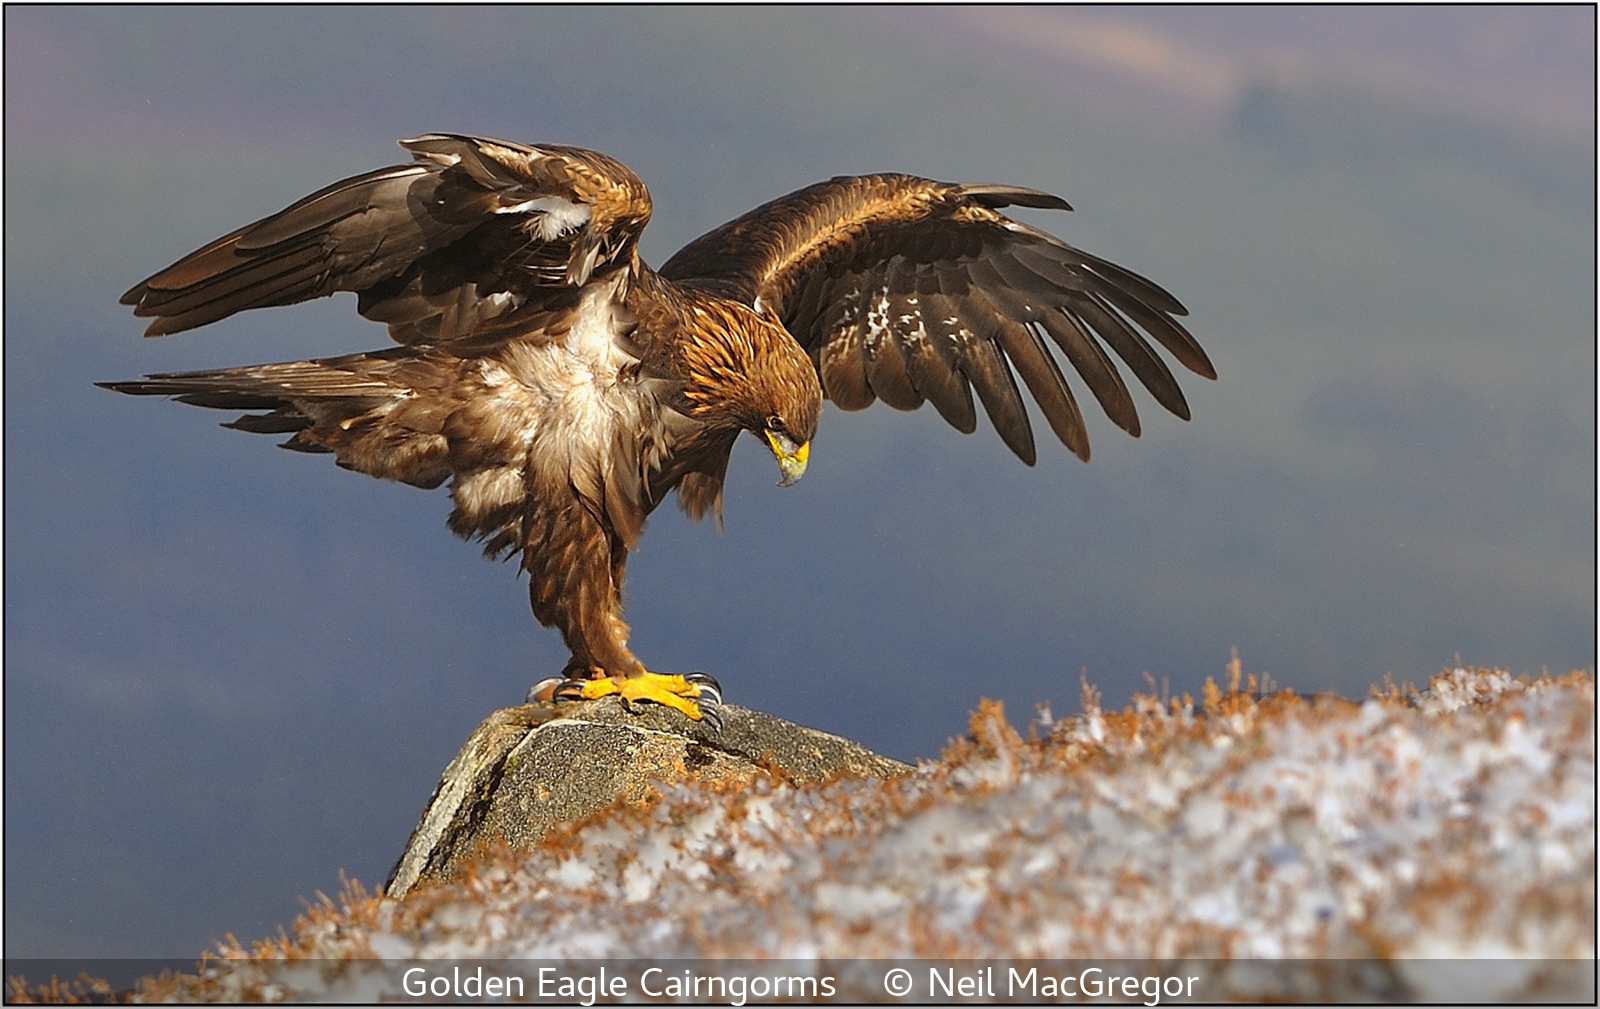 Neil MacGregor_Golden Eagle Cairngorms